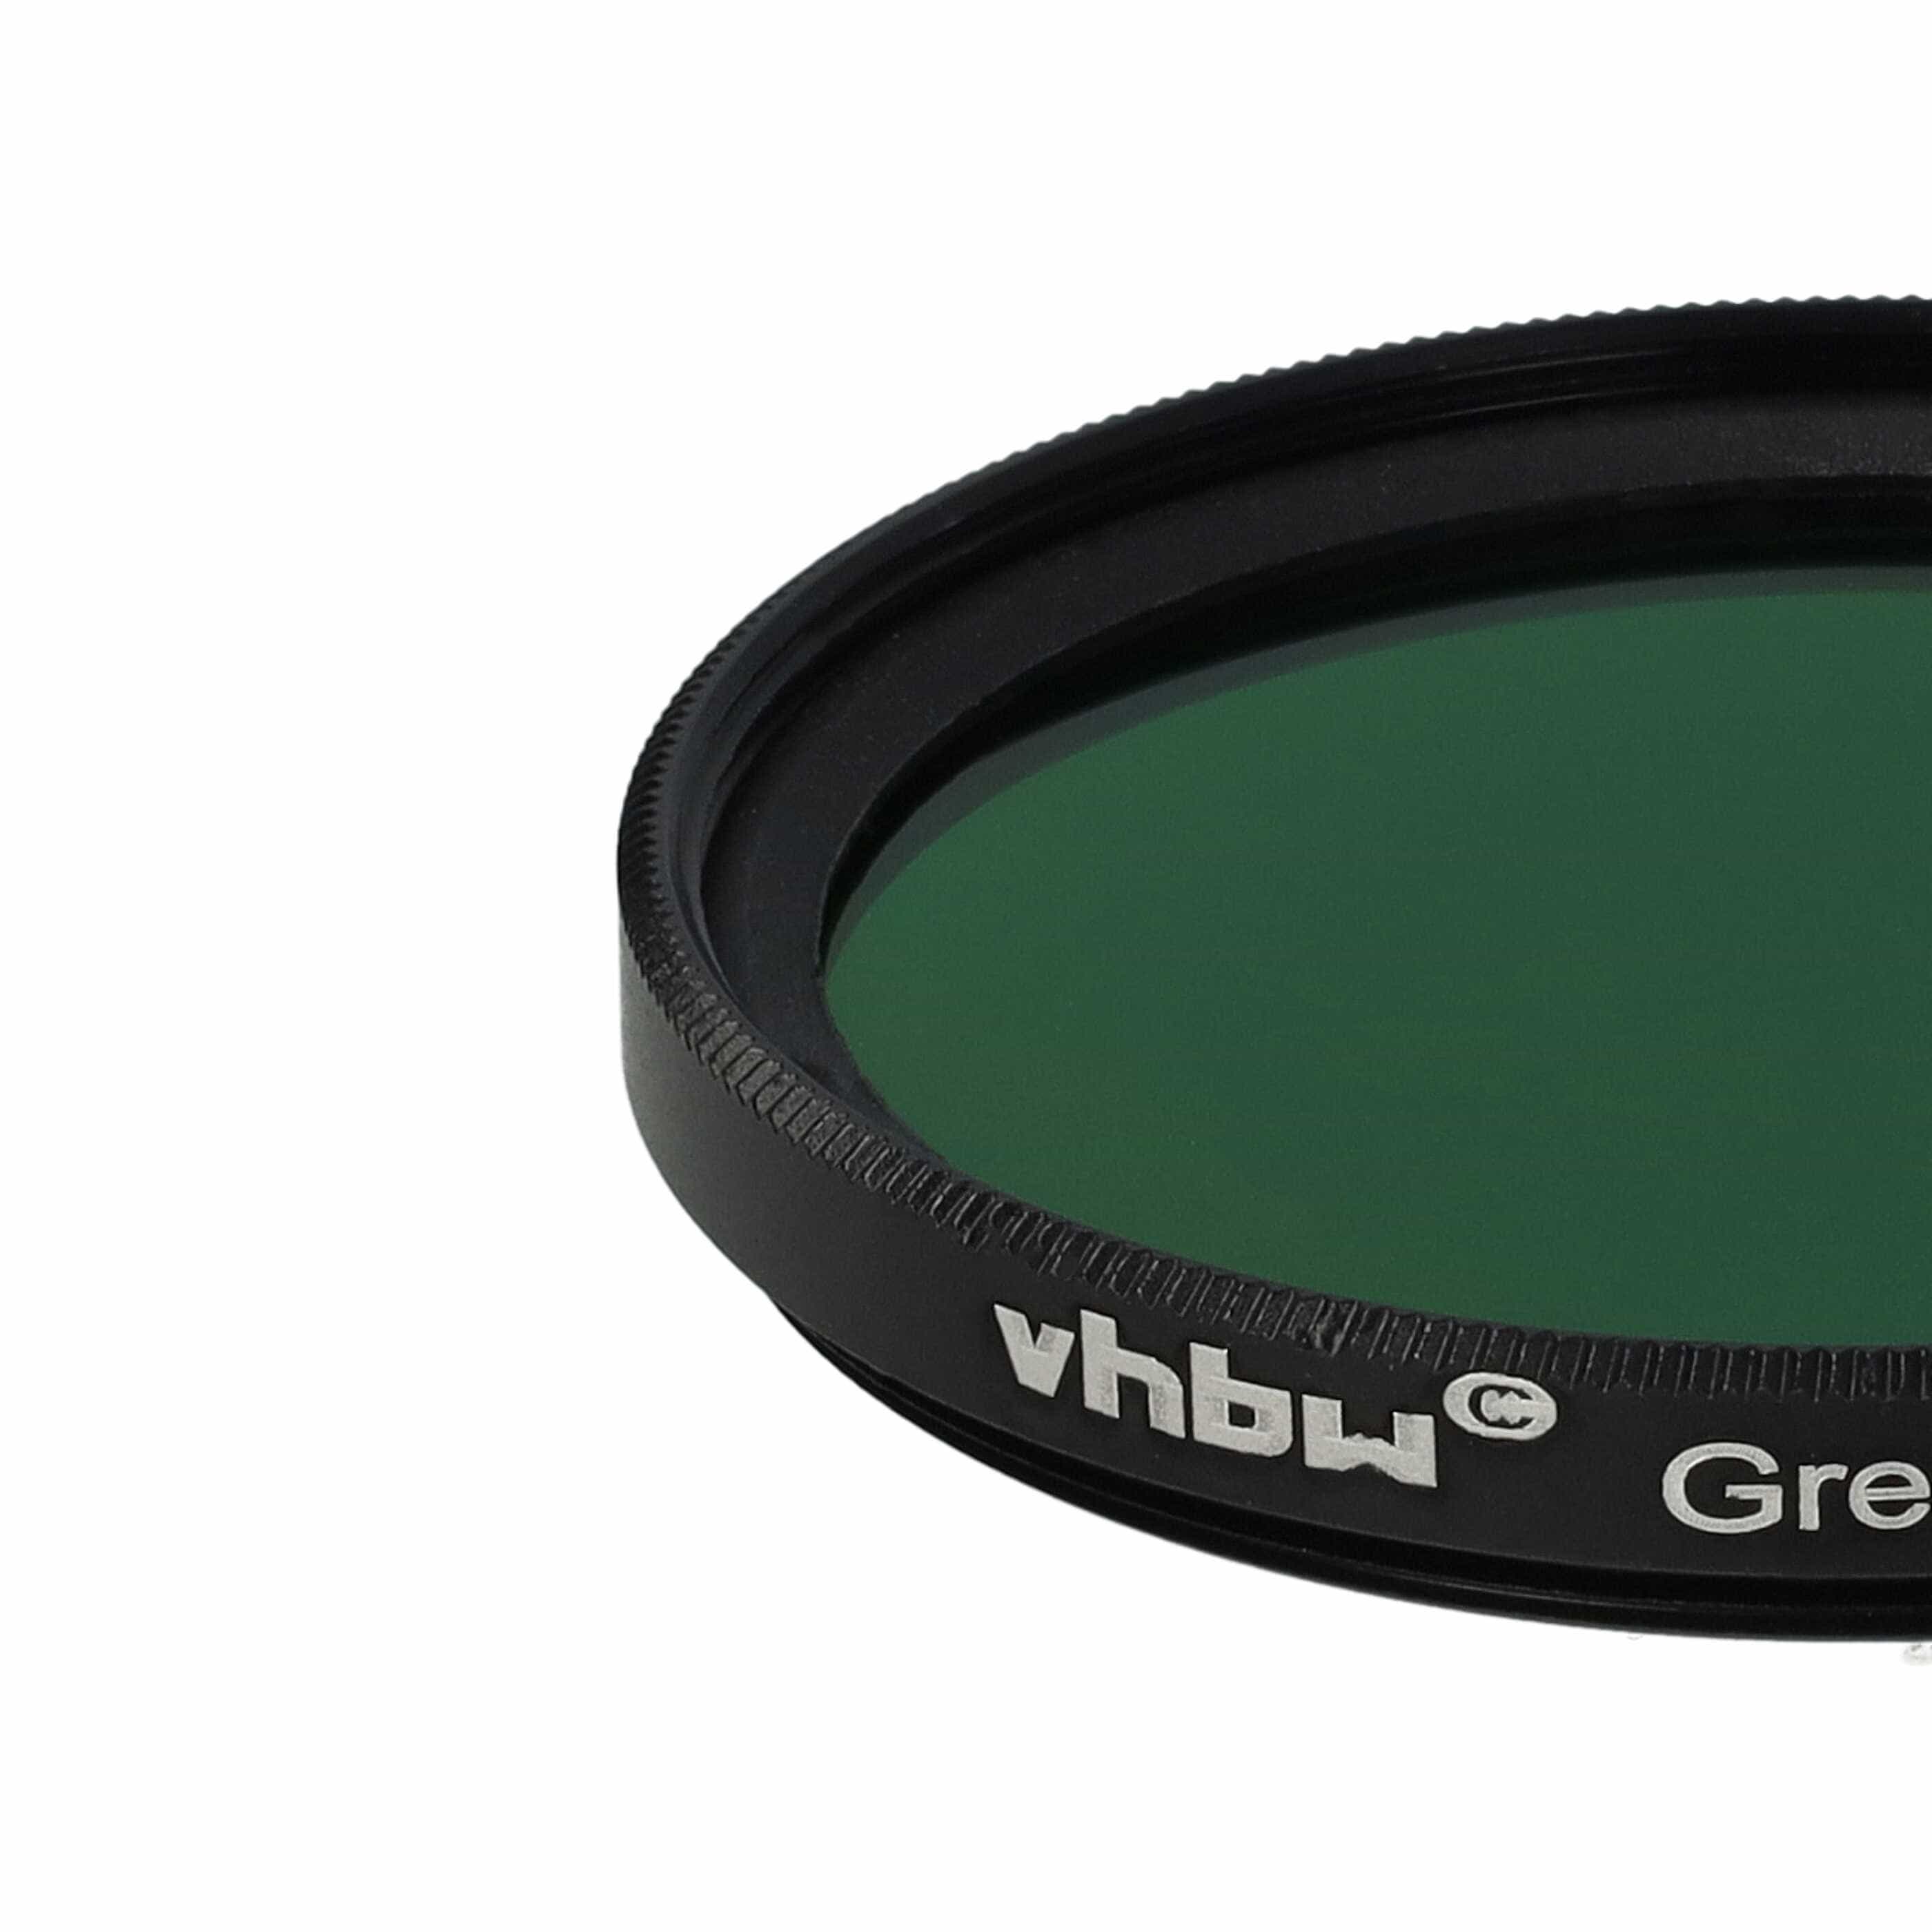 Filtro colorato per obiettivi fotocamera con filettatura da 43 mm - filtro verde